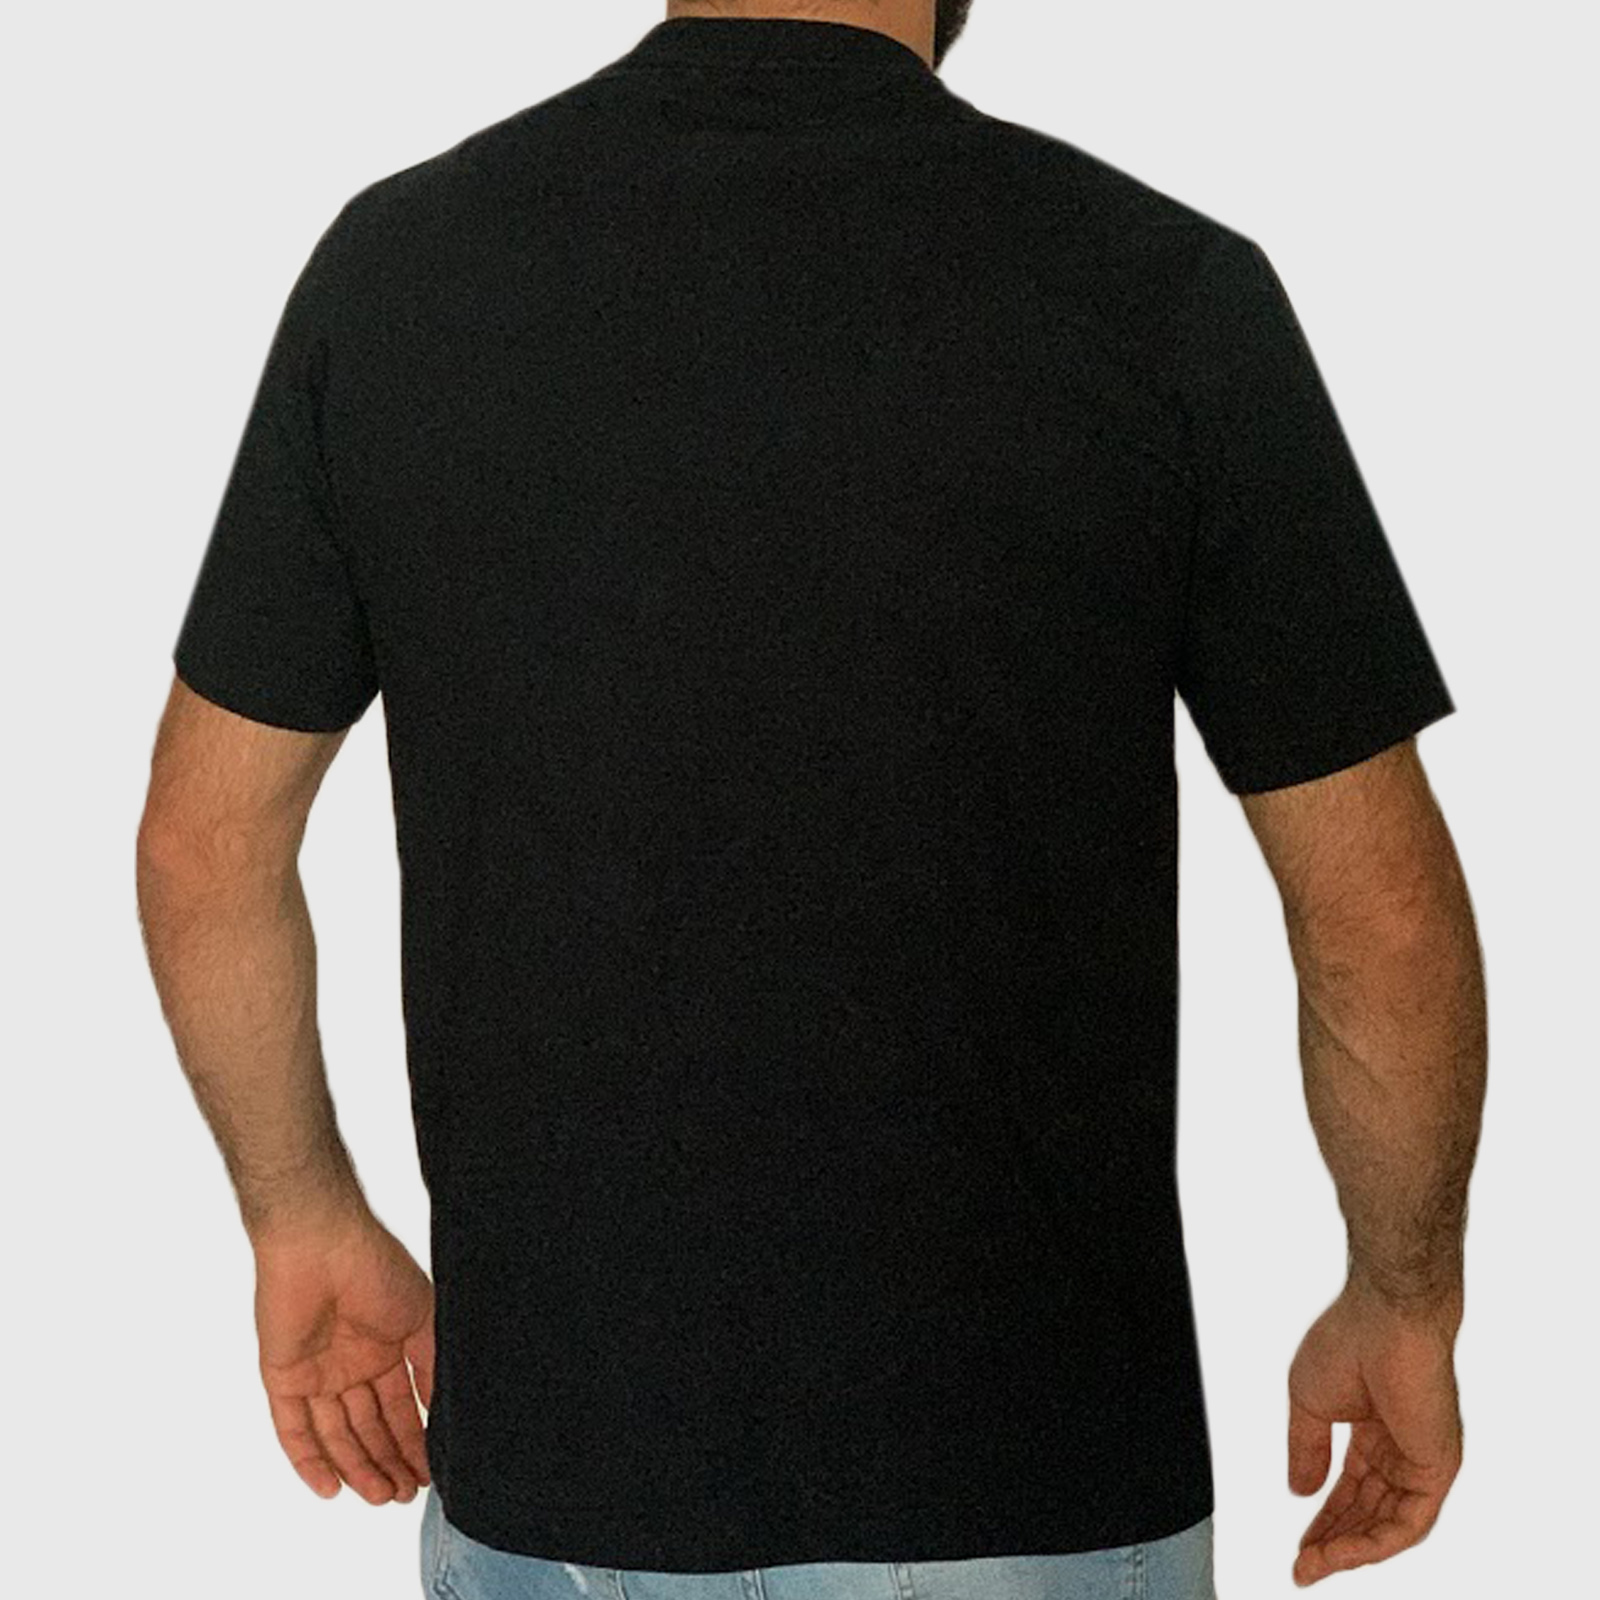 Купить дешево в интернет магазине футболки для мужчин